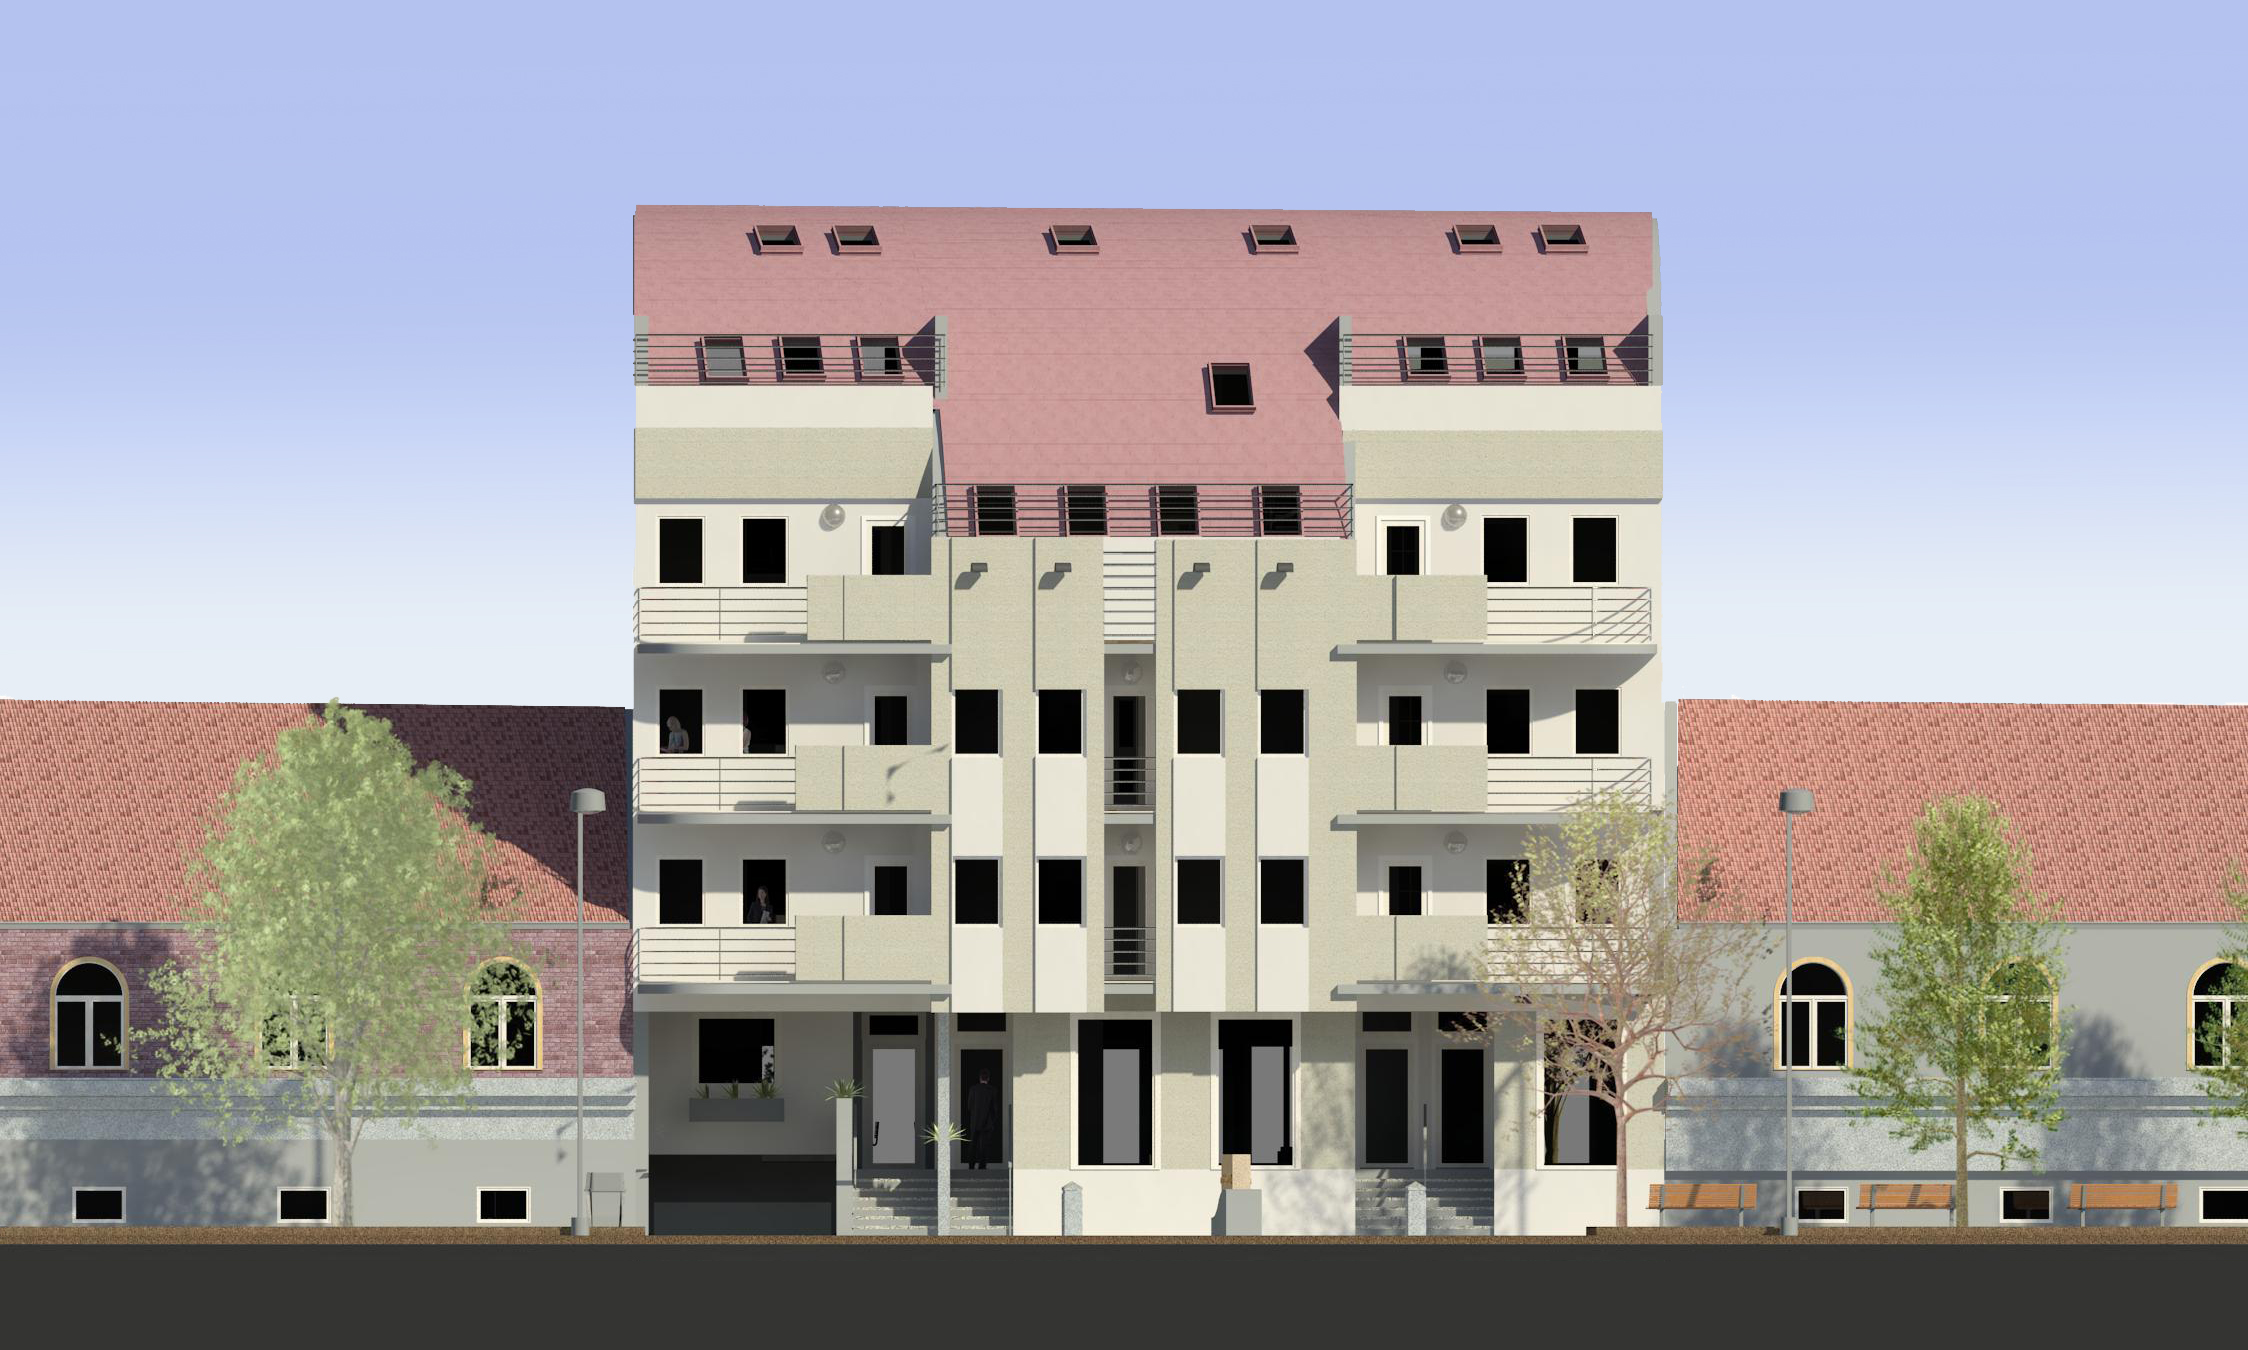 Sarajlijina Apartment Building